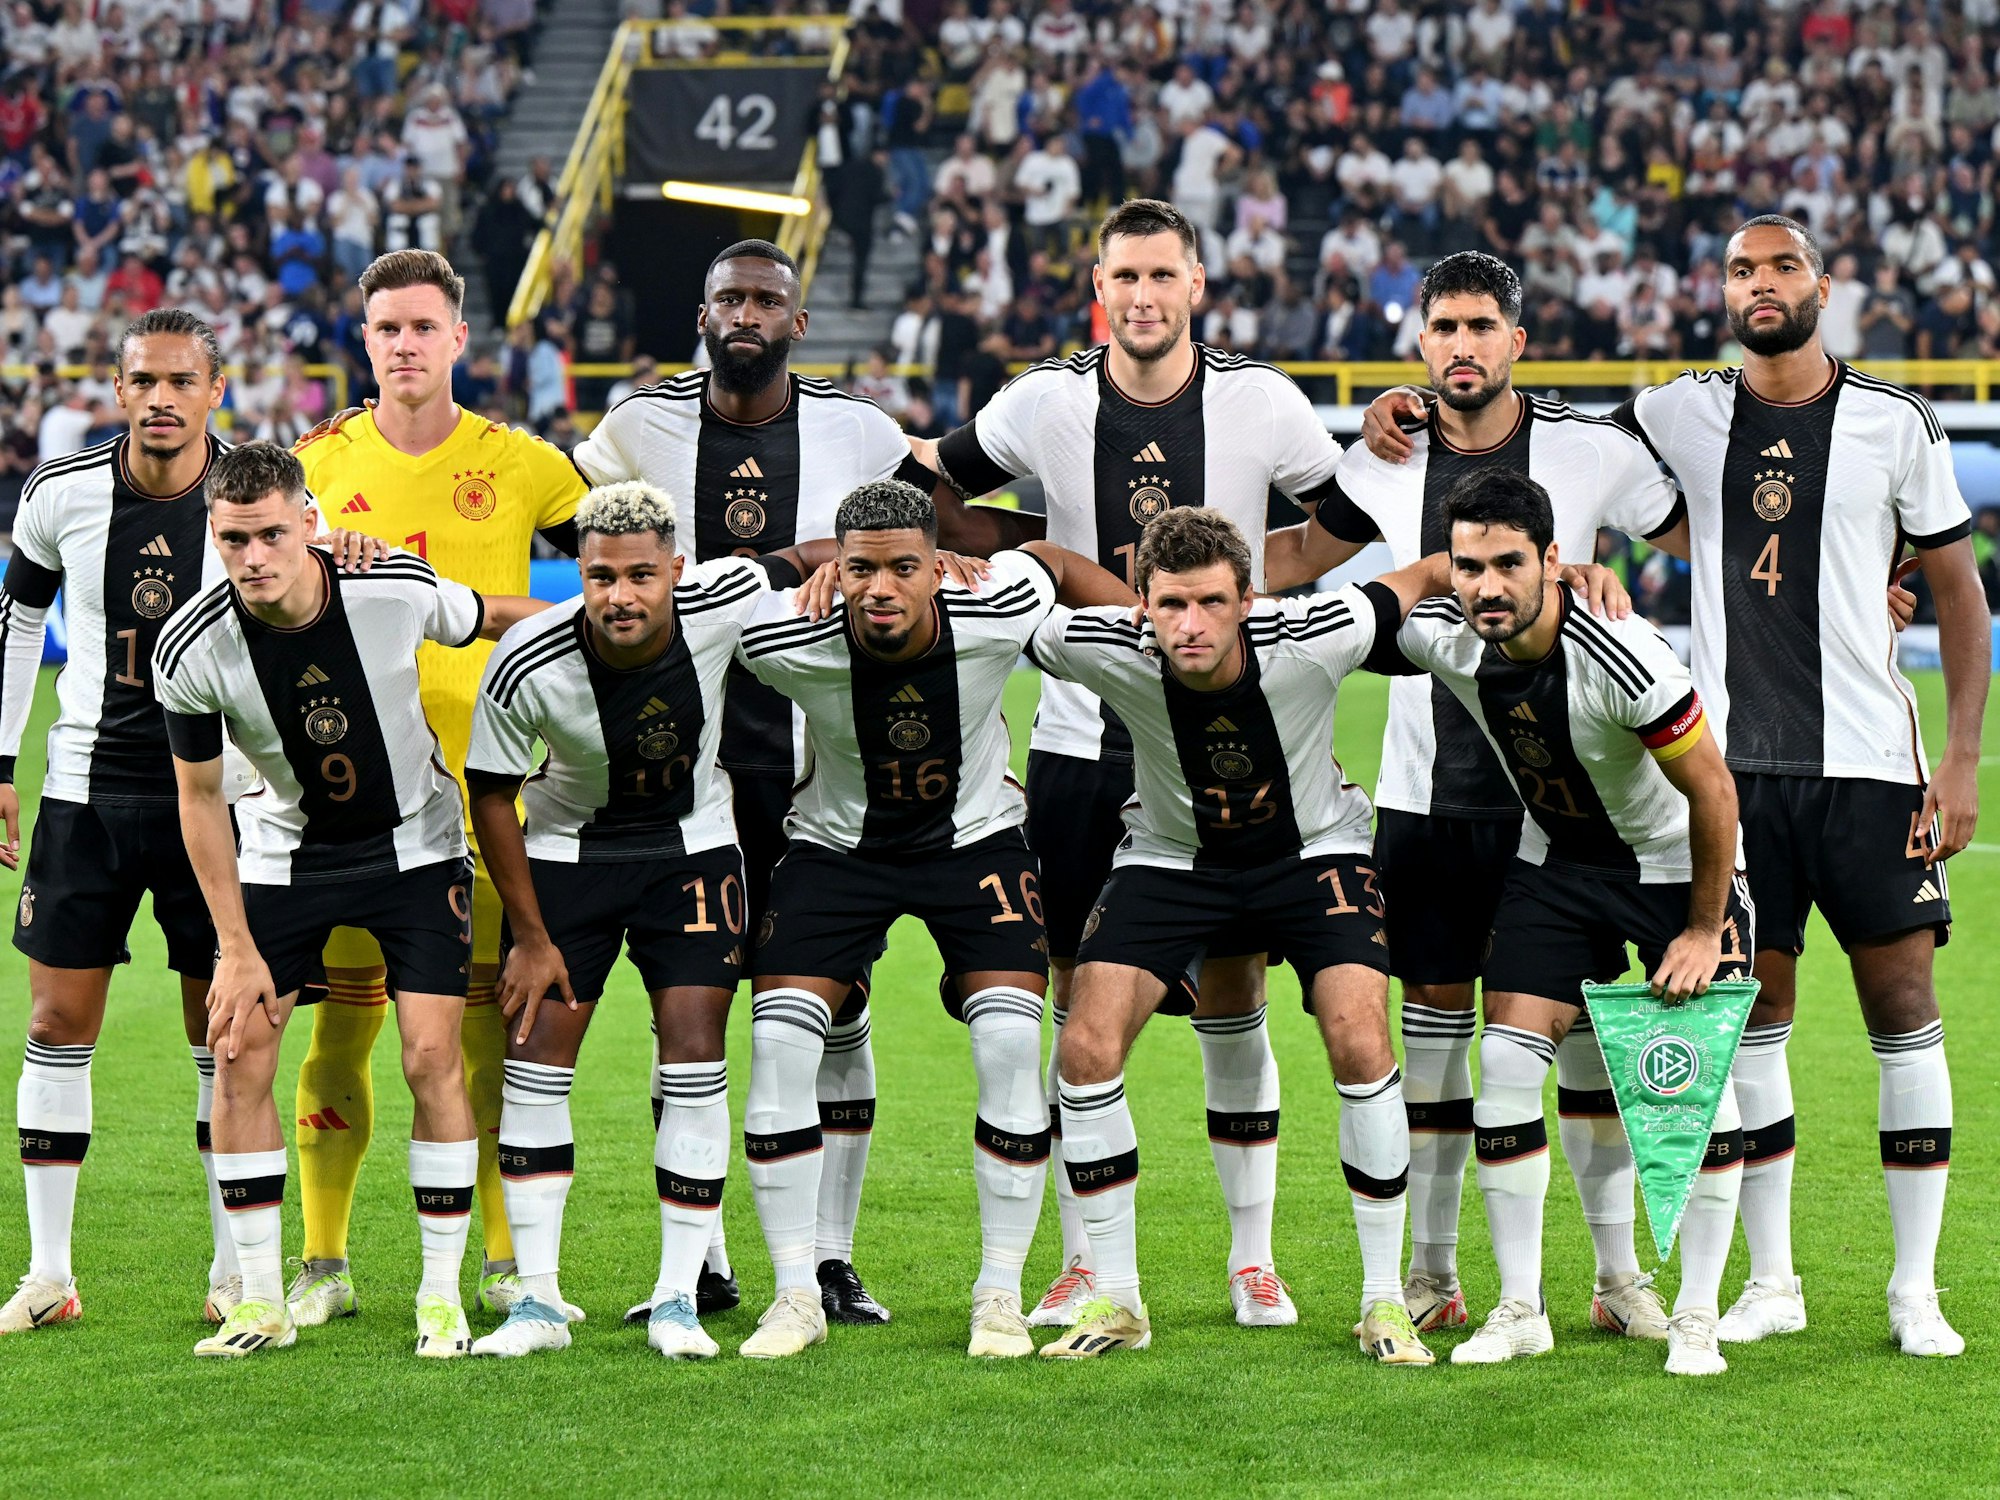 Die Spieler der deutschen Nationalmannschaft haben vor dem Spiel Aufstellung für ein Teamfoto genommen.